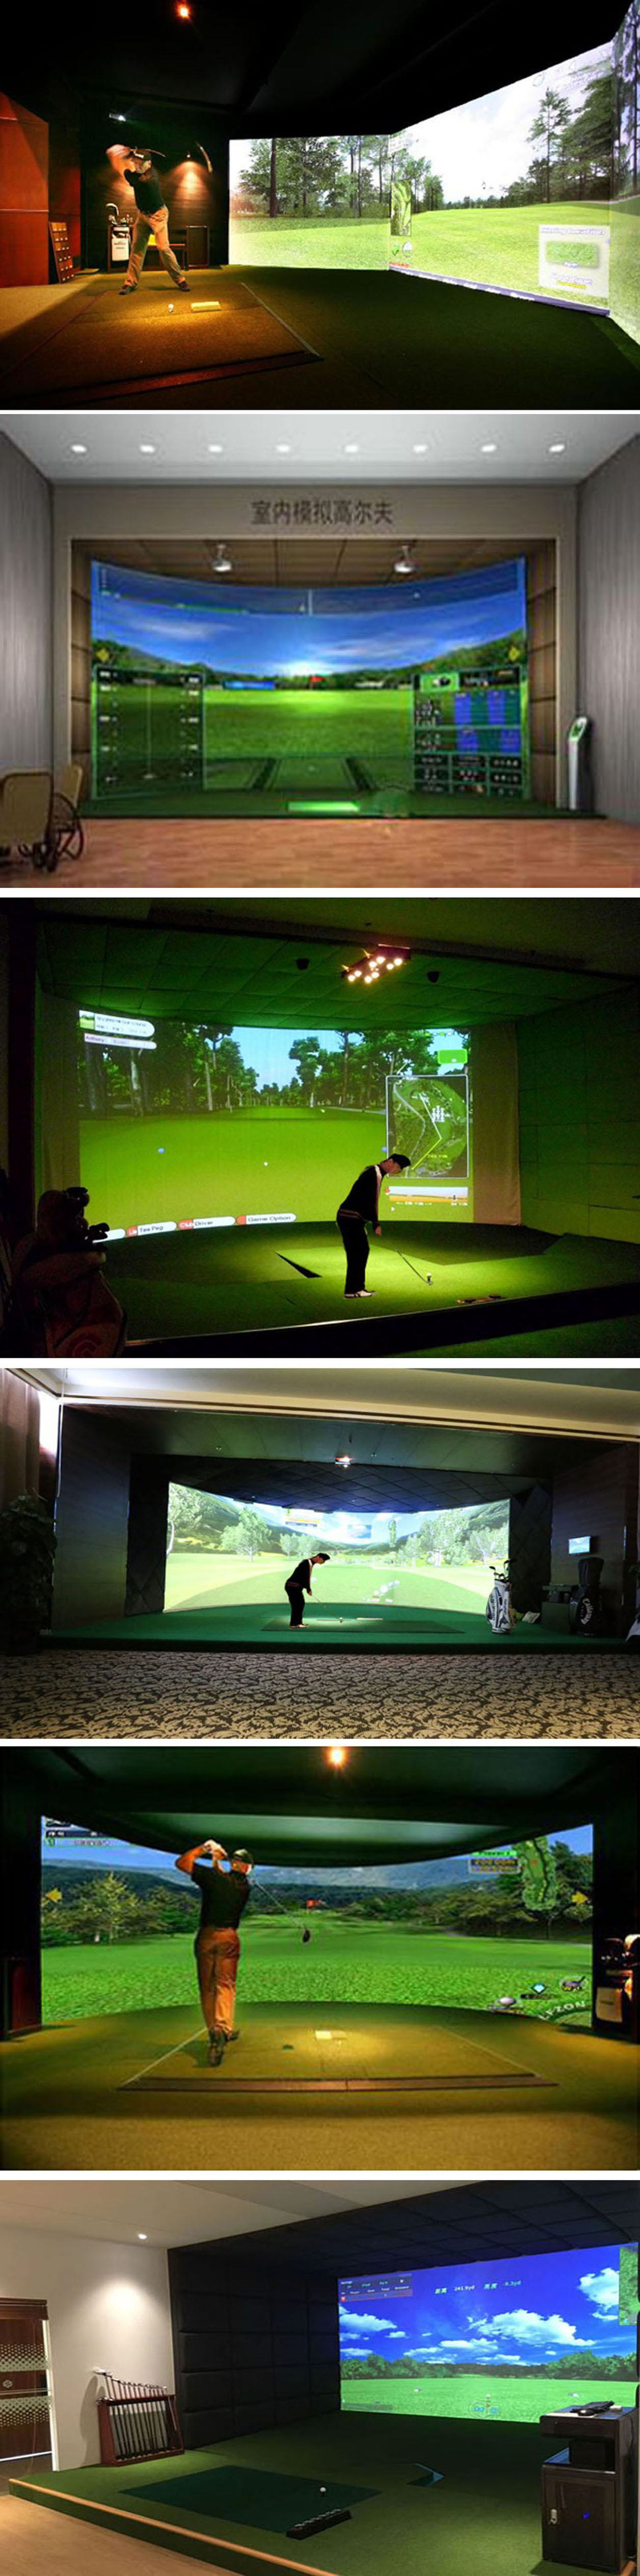 高尔夫室内模拟球场 三.jpg